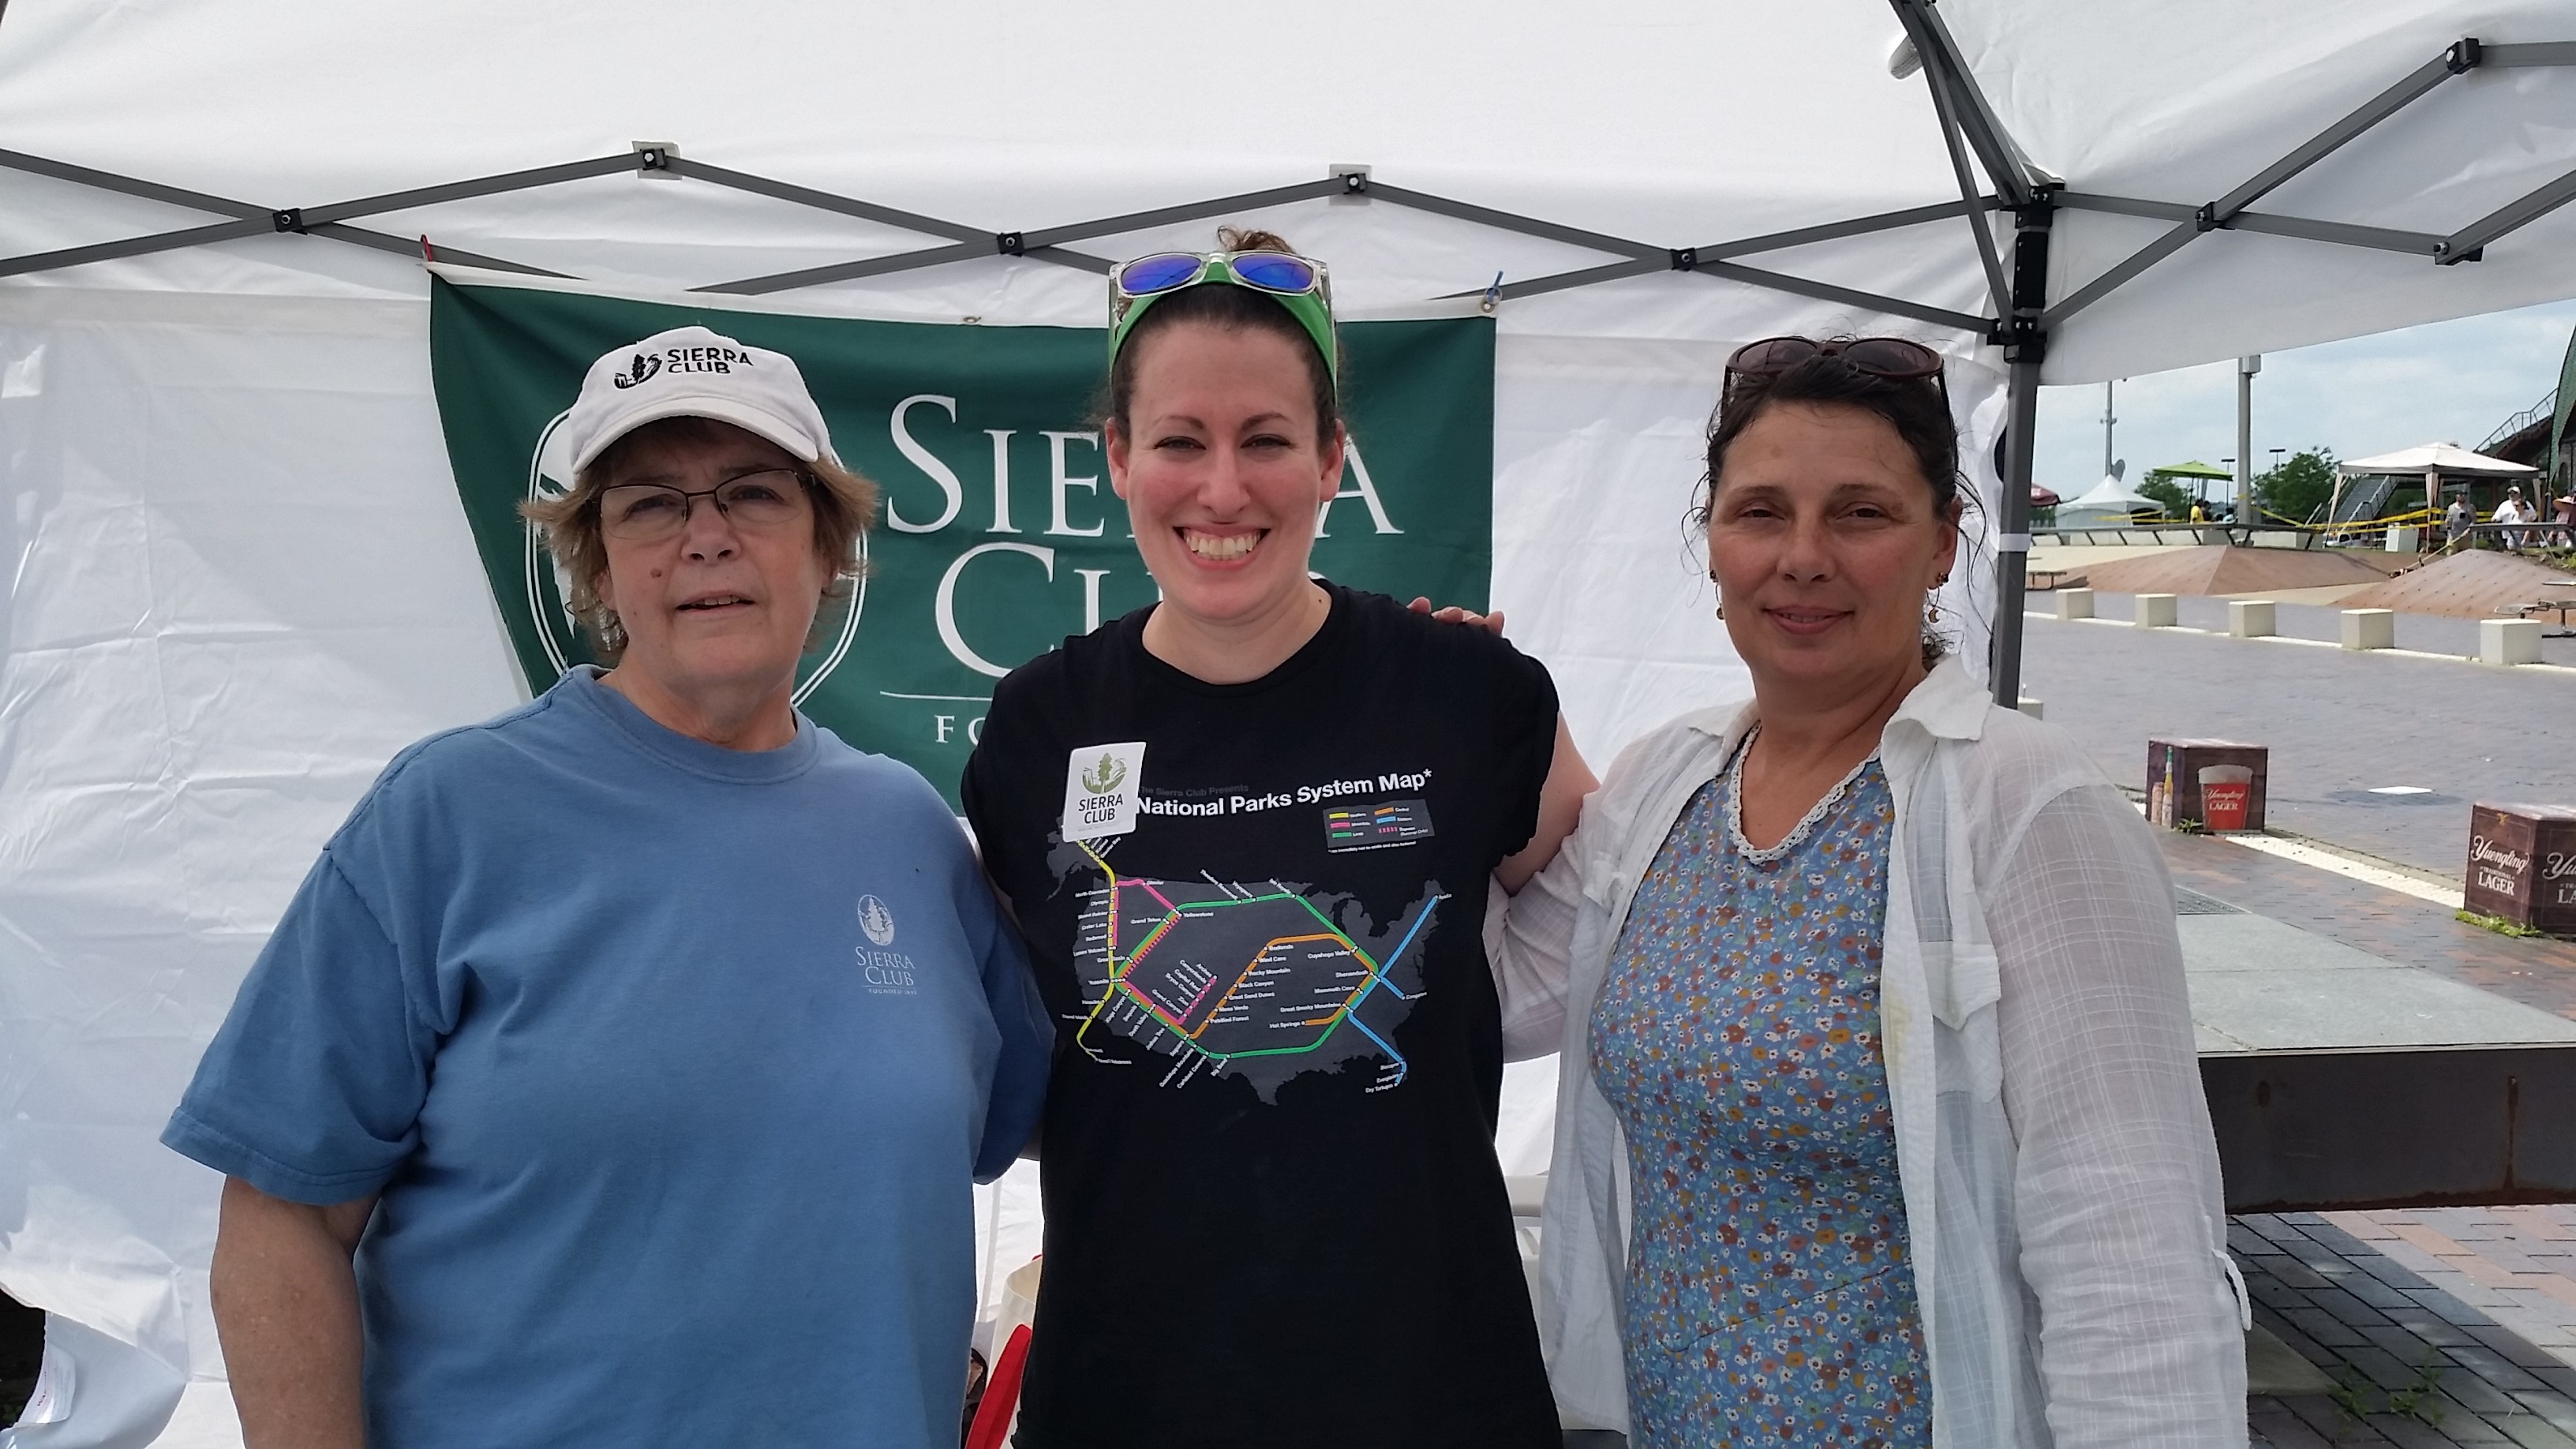 Three Sierra Club volunteers at a tabling event